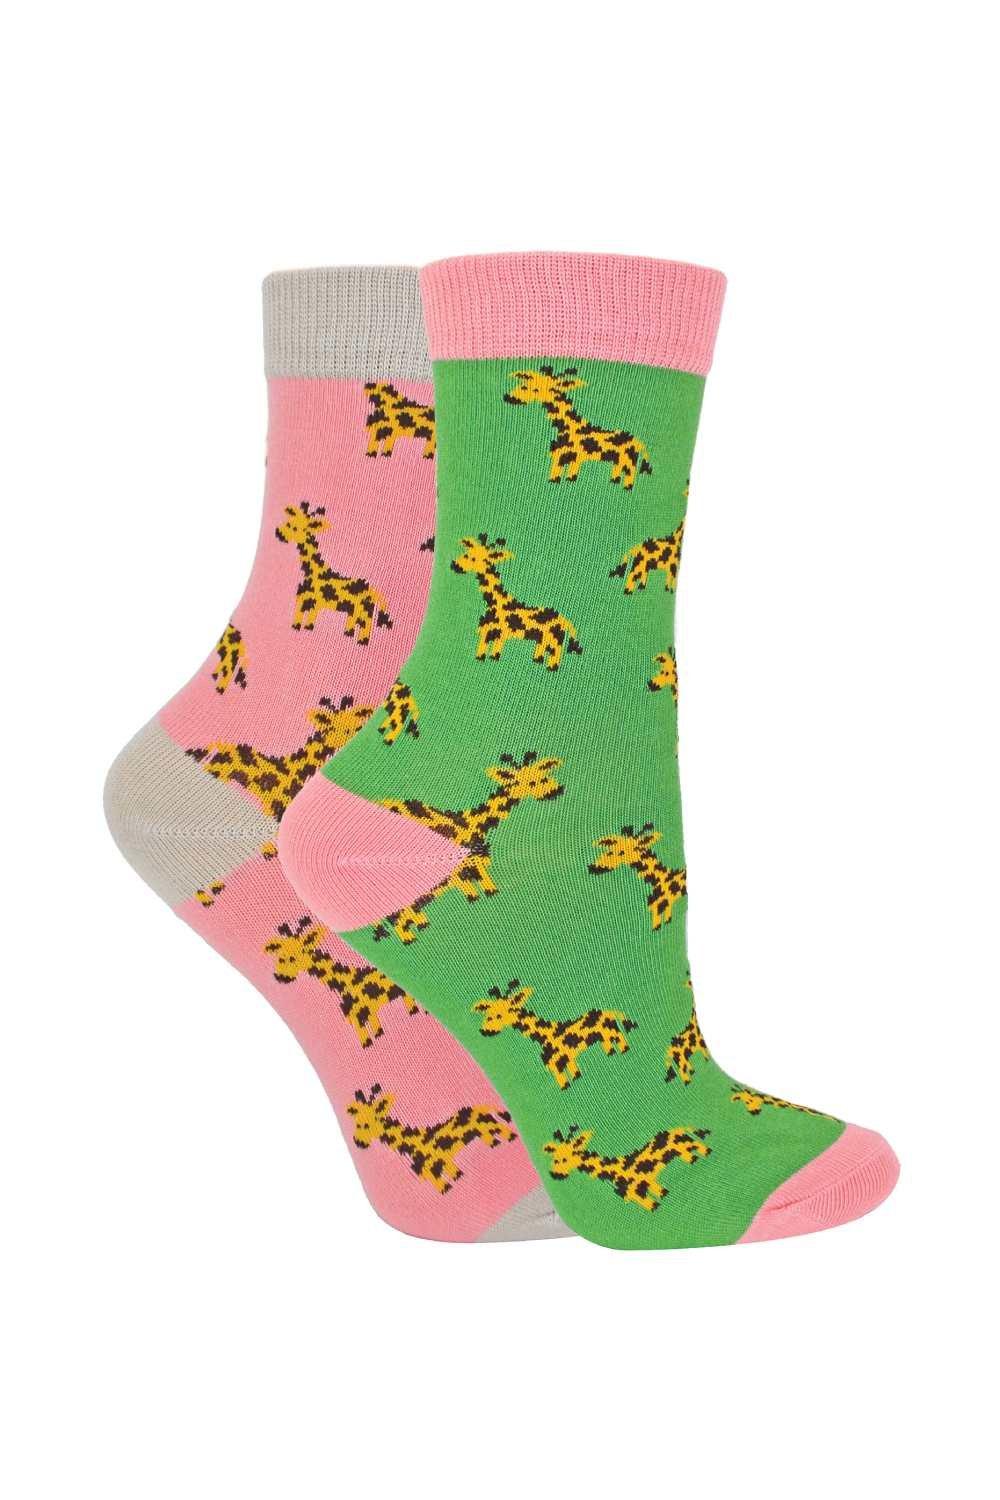 цена Комплект из 2 носков с животными | Бамбуковые носки с необычным узором Miss Sparrow, зеленый